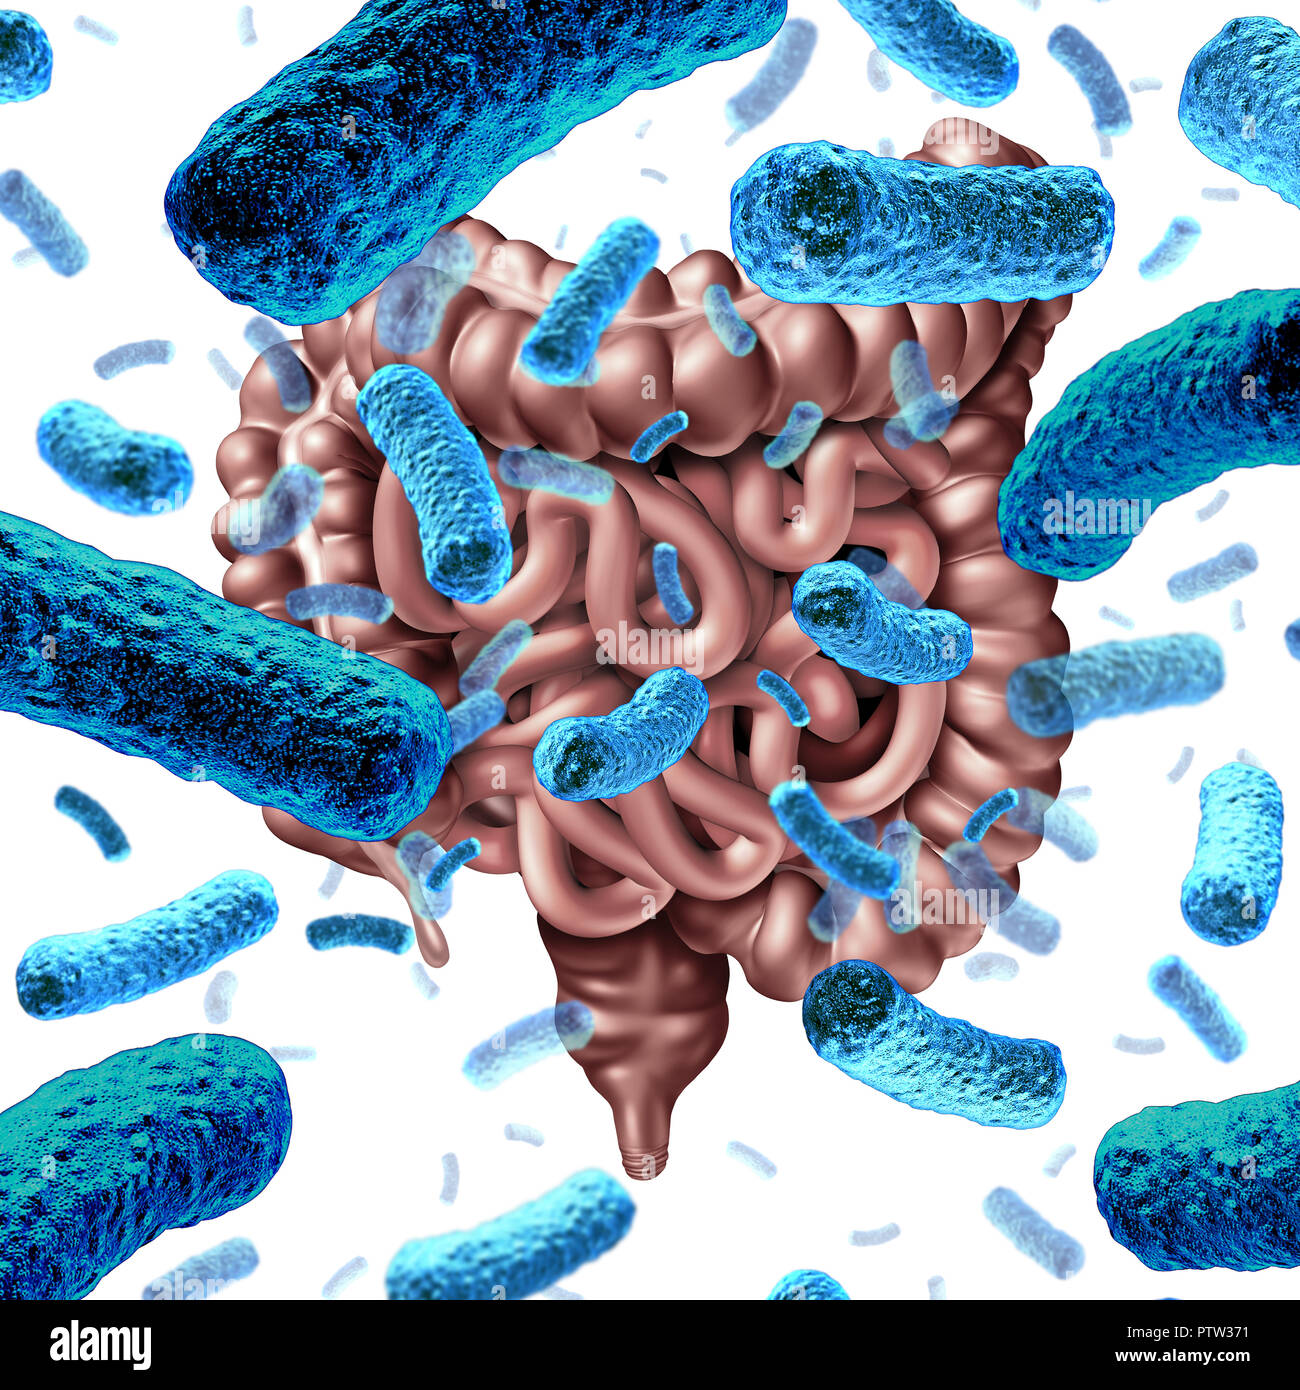 Darmbakterien wie probiotische Bakterien im Dünndarm und verdauungsfördernde Mikroflora im Dickdarm oder Darm als Symbol für mikrobiom. Stockfoto